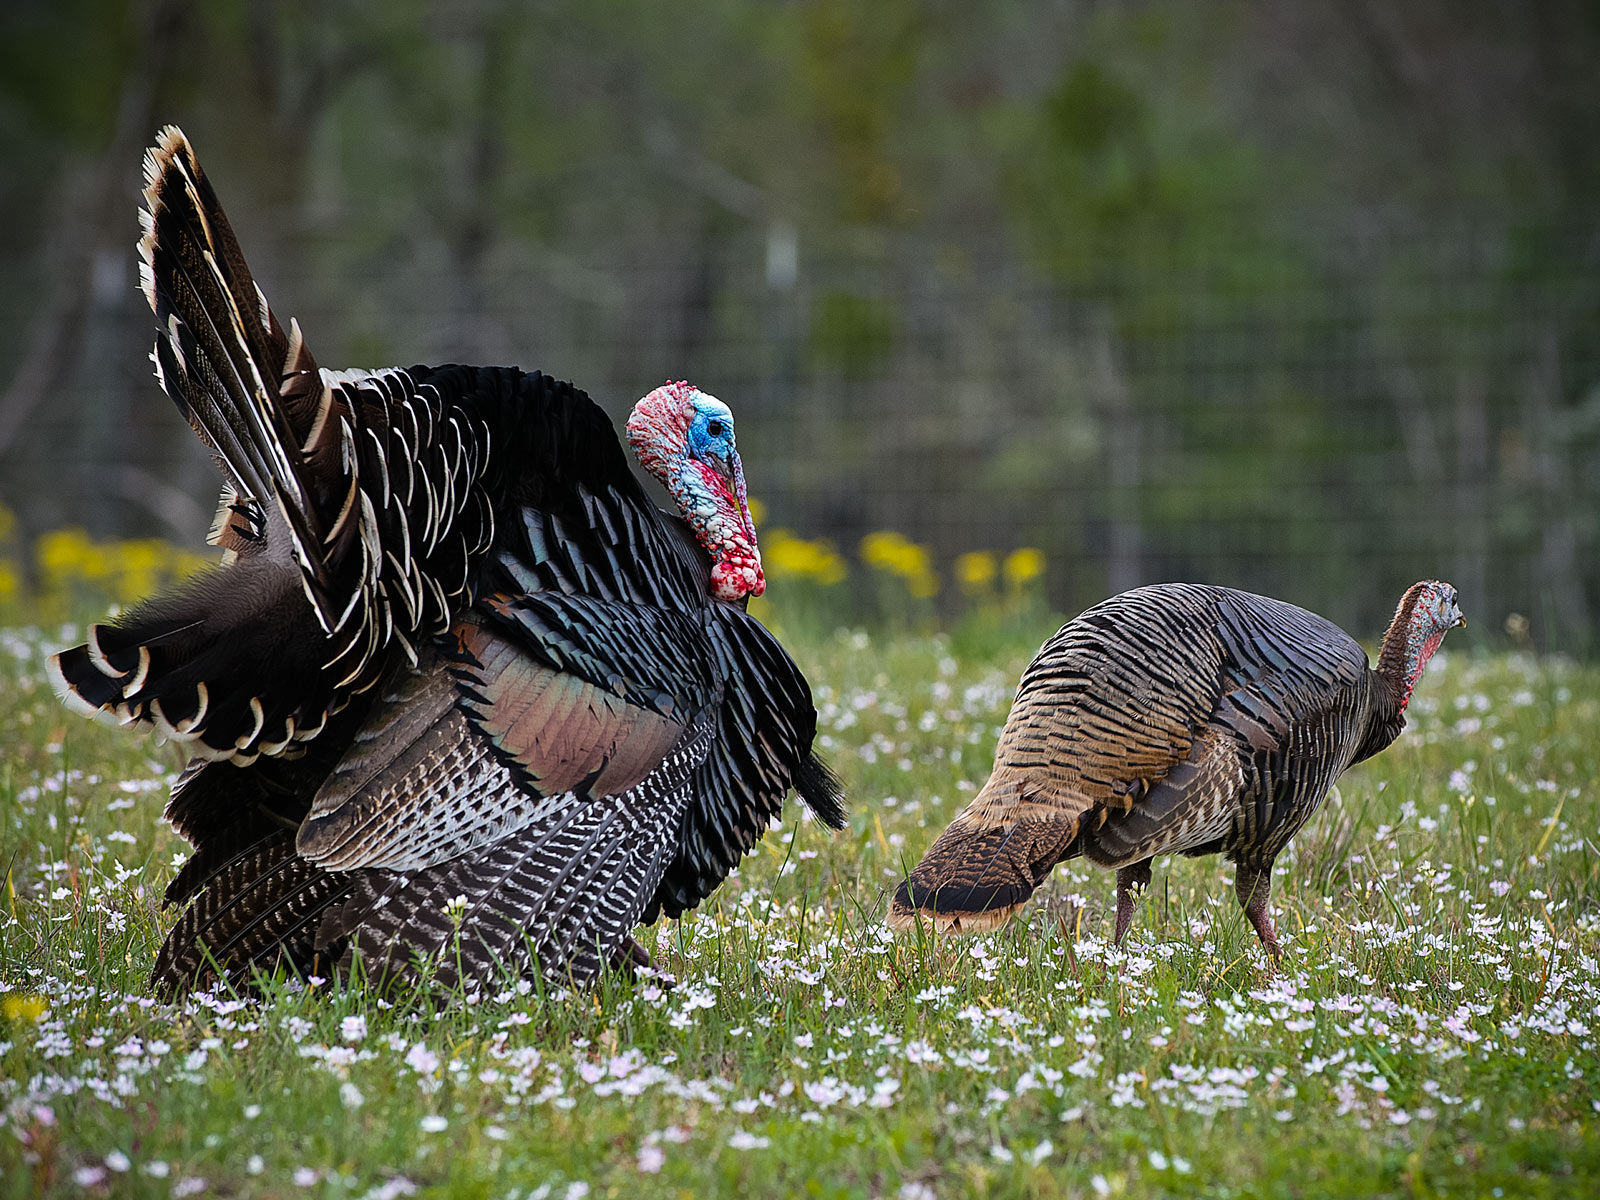 Turkey gobbler and hen.